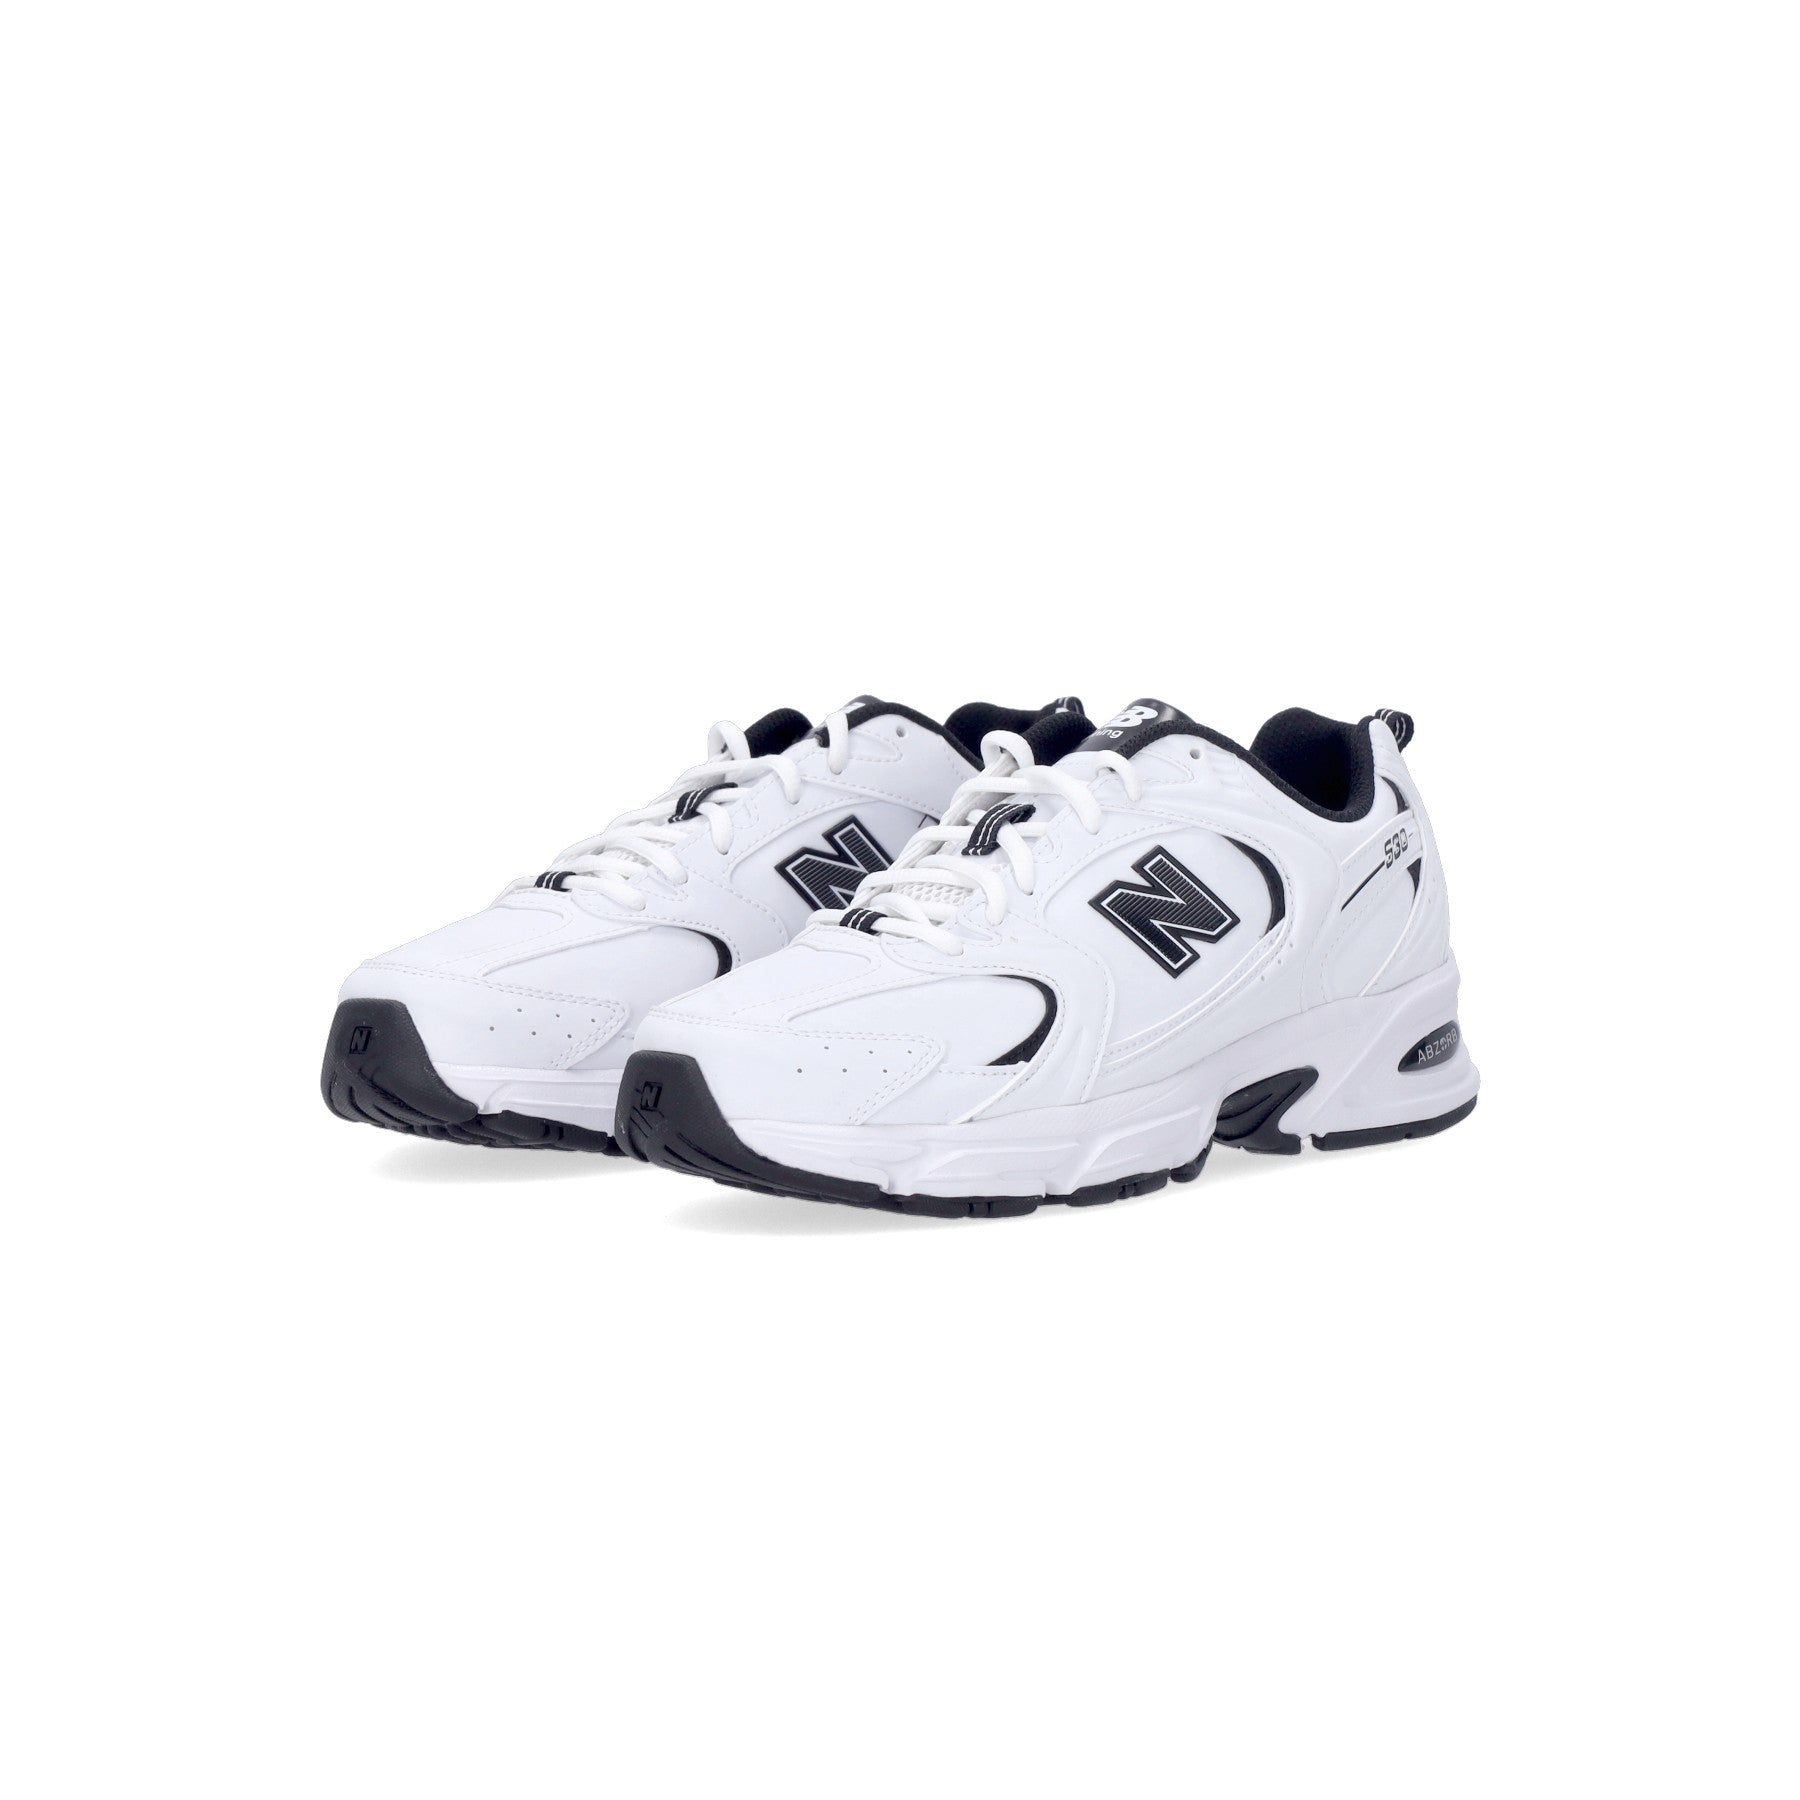 Low Men's Shoe 530 White/black